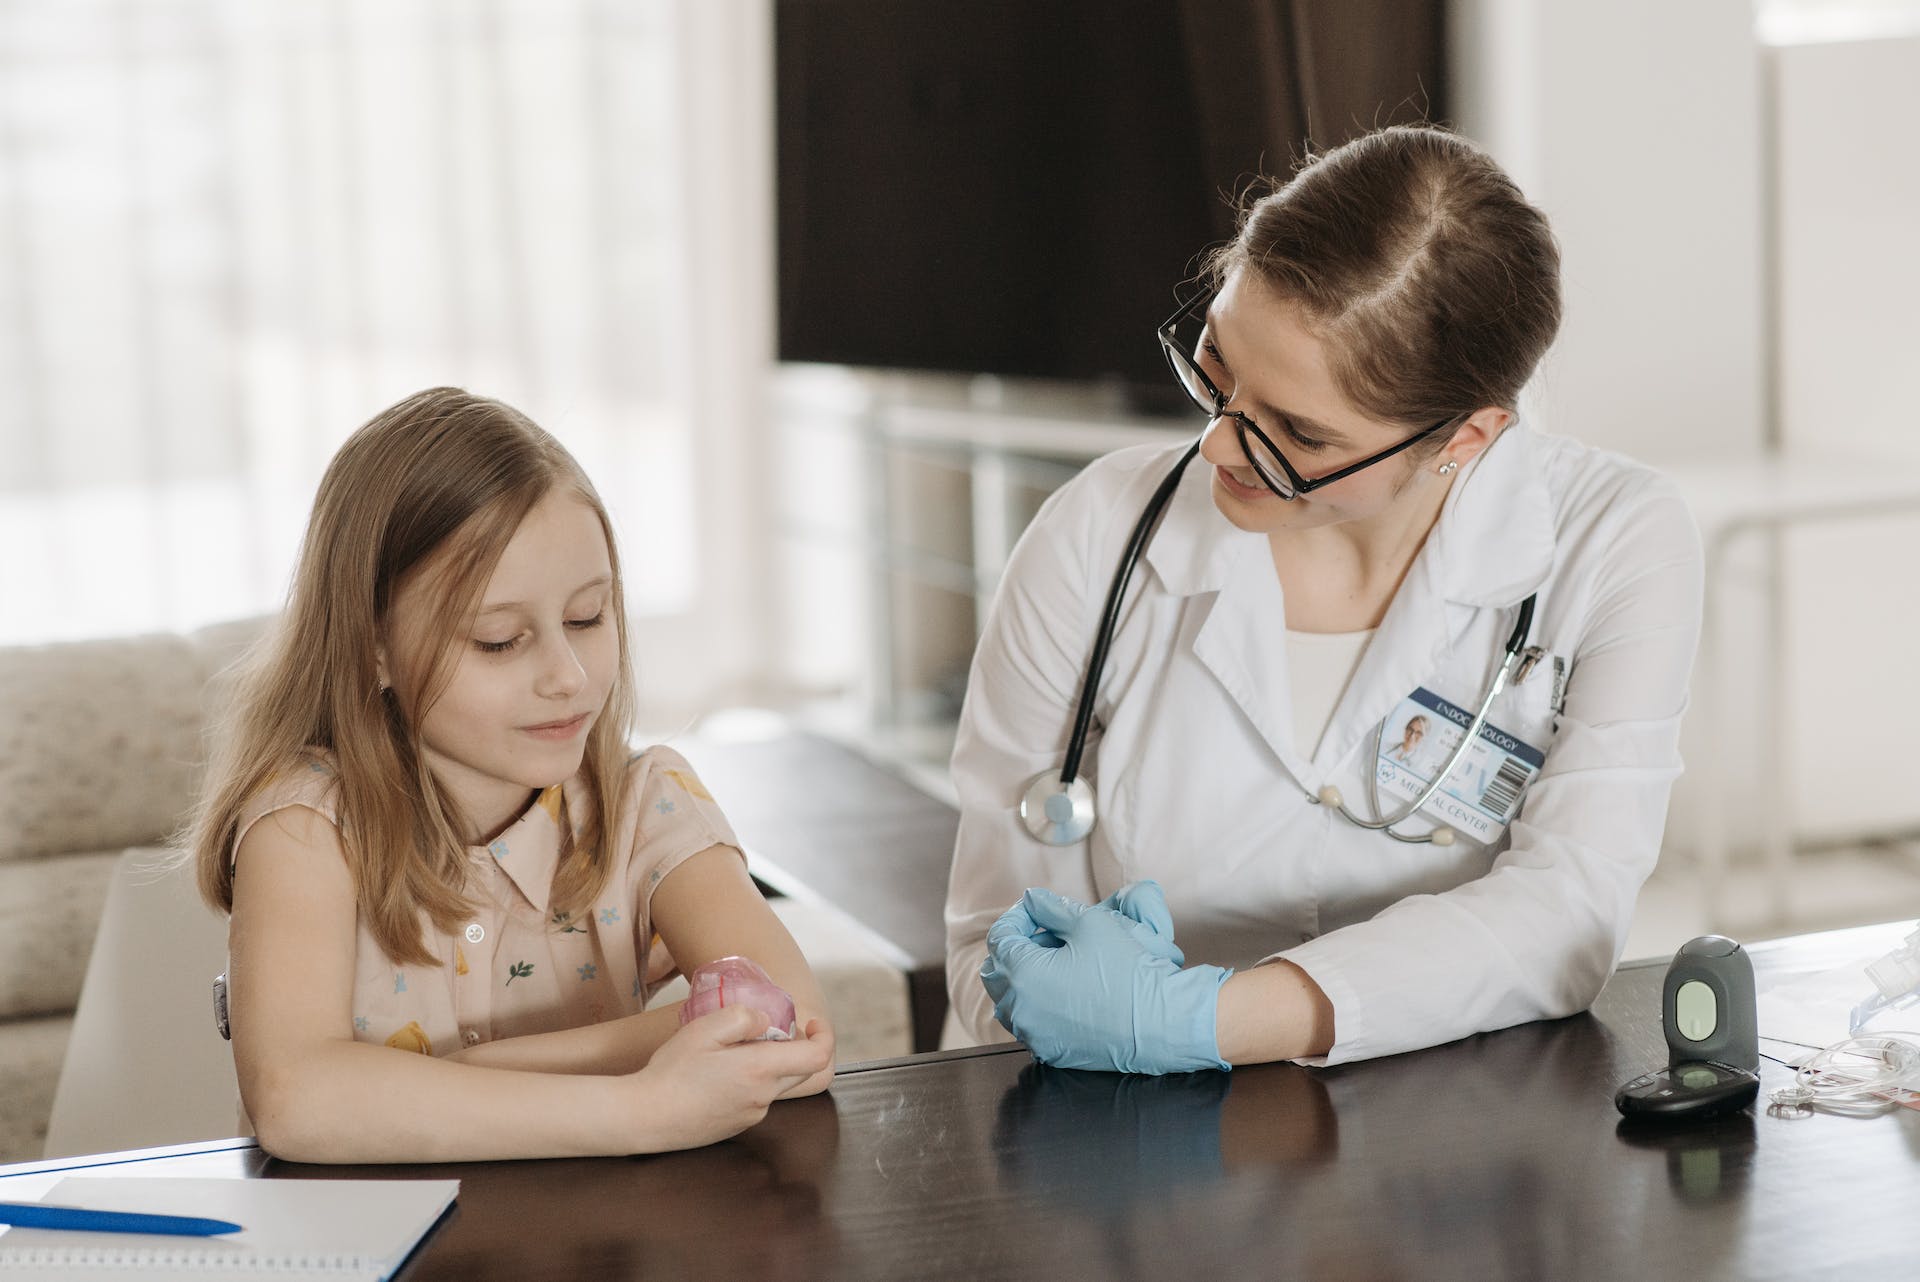 Arzt im Gespräch mit kleinem Mädchen | Quelle: Pexels